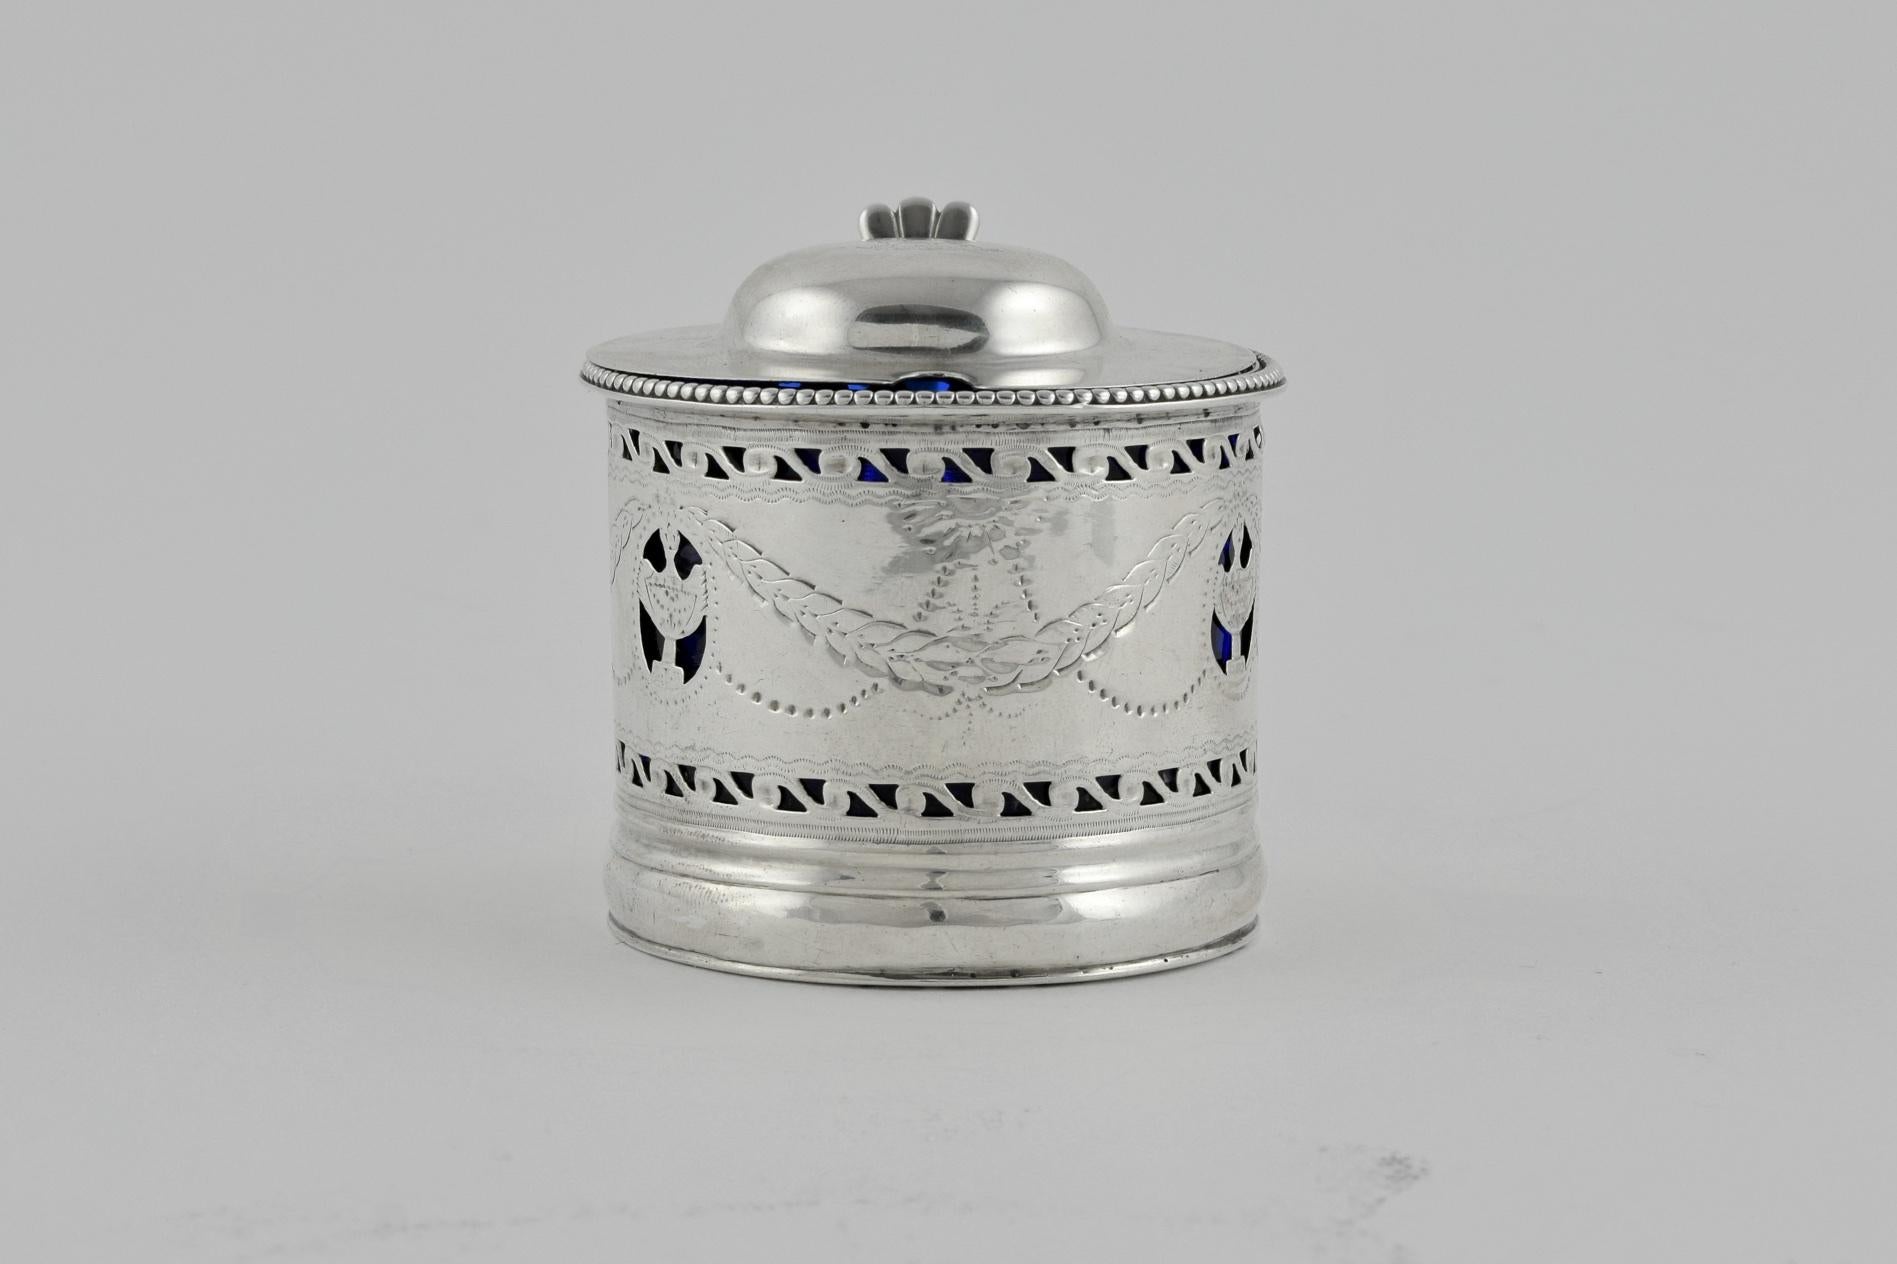 Dieser charmante kleine Senftopf wurde 1800 in Dublin hergestellt. Die Senfkanne ist mit gravierten Zacken und einem durchbrochenen Silberkorpus verziert, der das einzigartige blaue Glasinnere durchscheinen lässt. Auf dem gewölbten Deckel ist ein